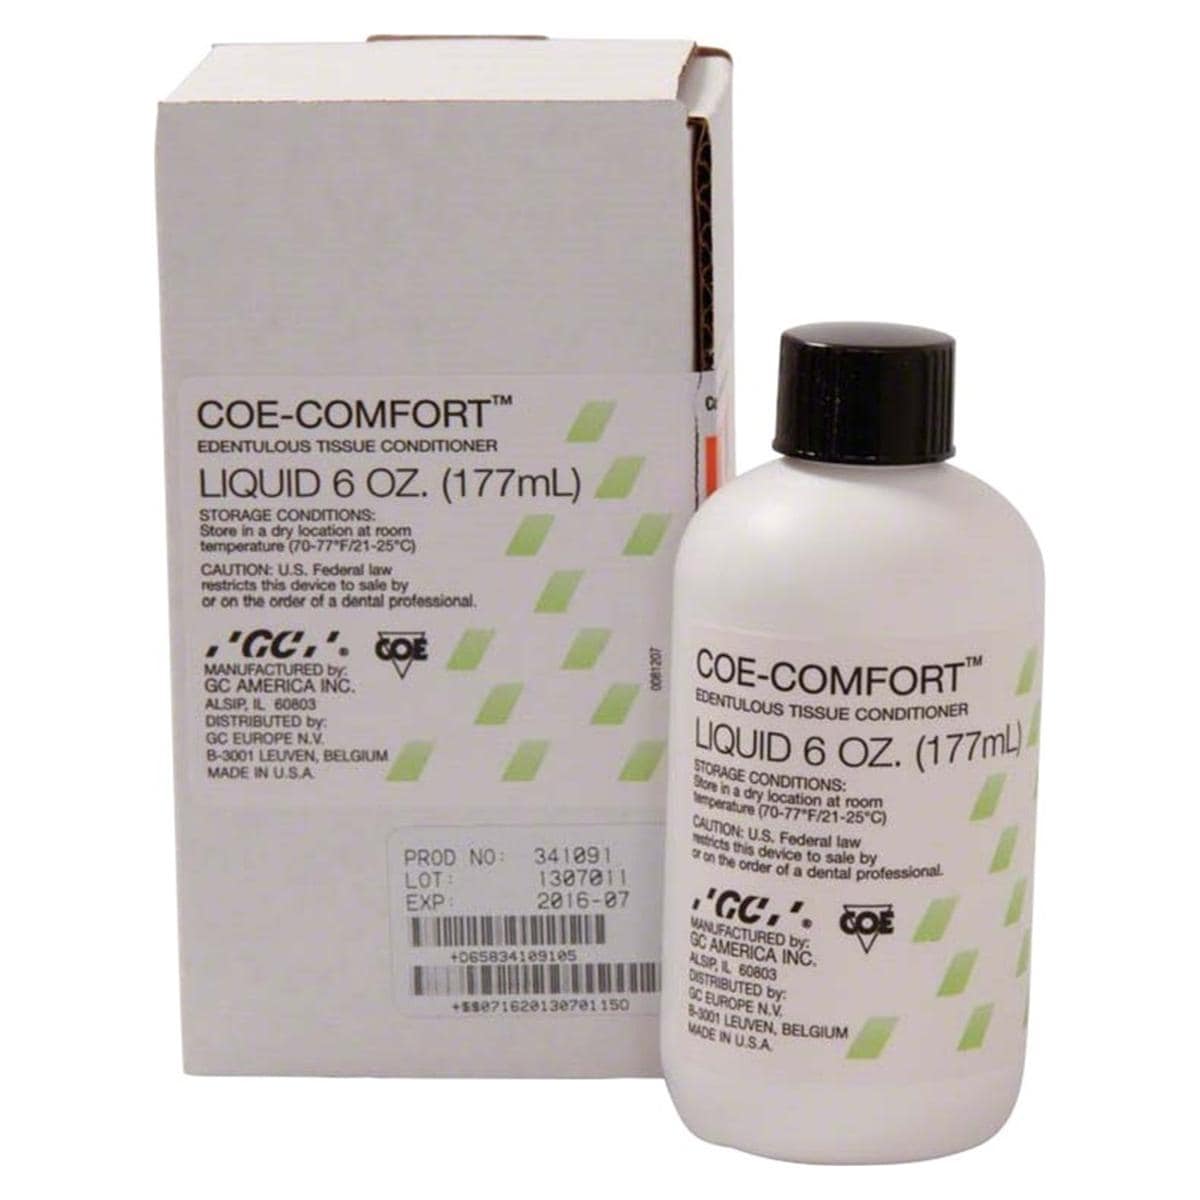 COE-COMFORT™ Flüssigkeit - Flasche 177 ml